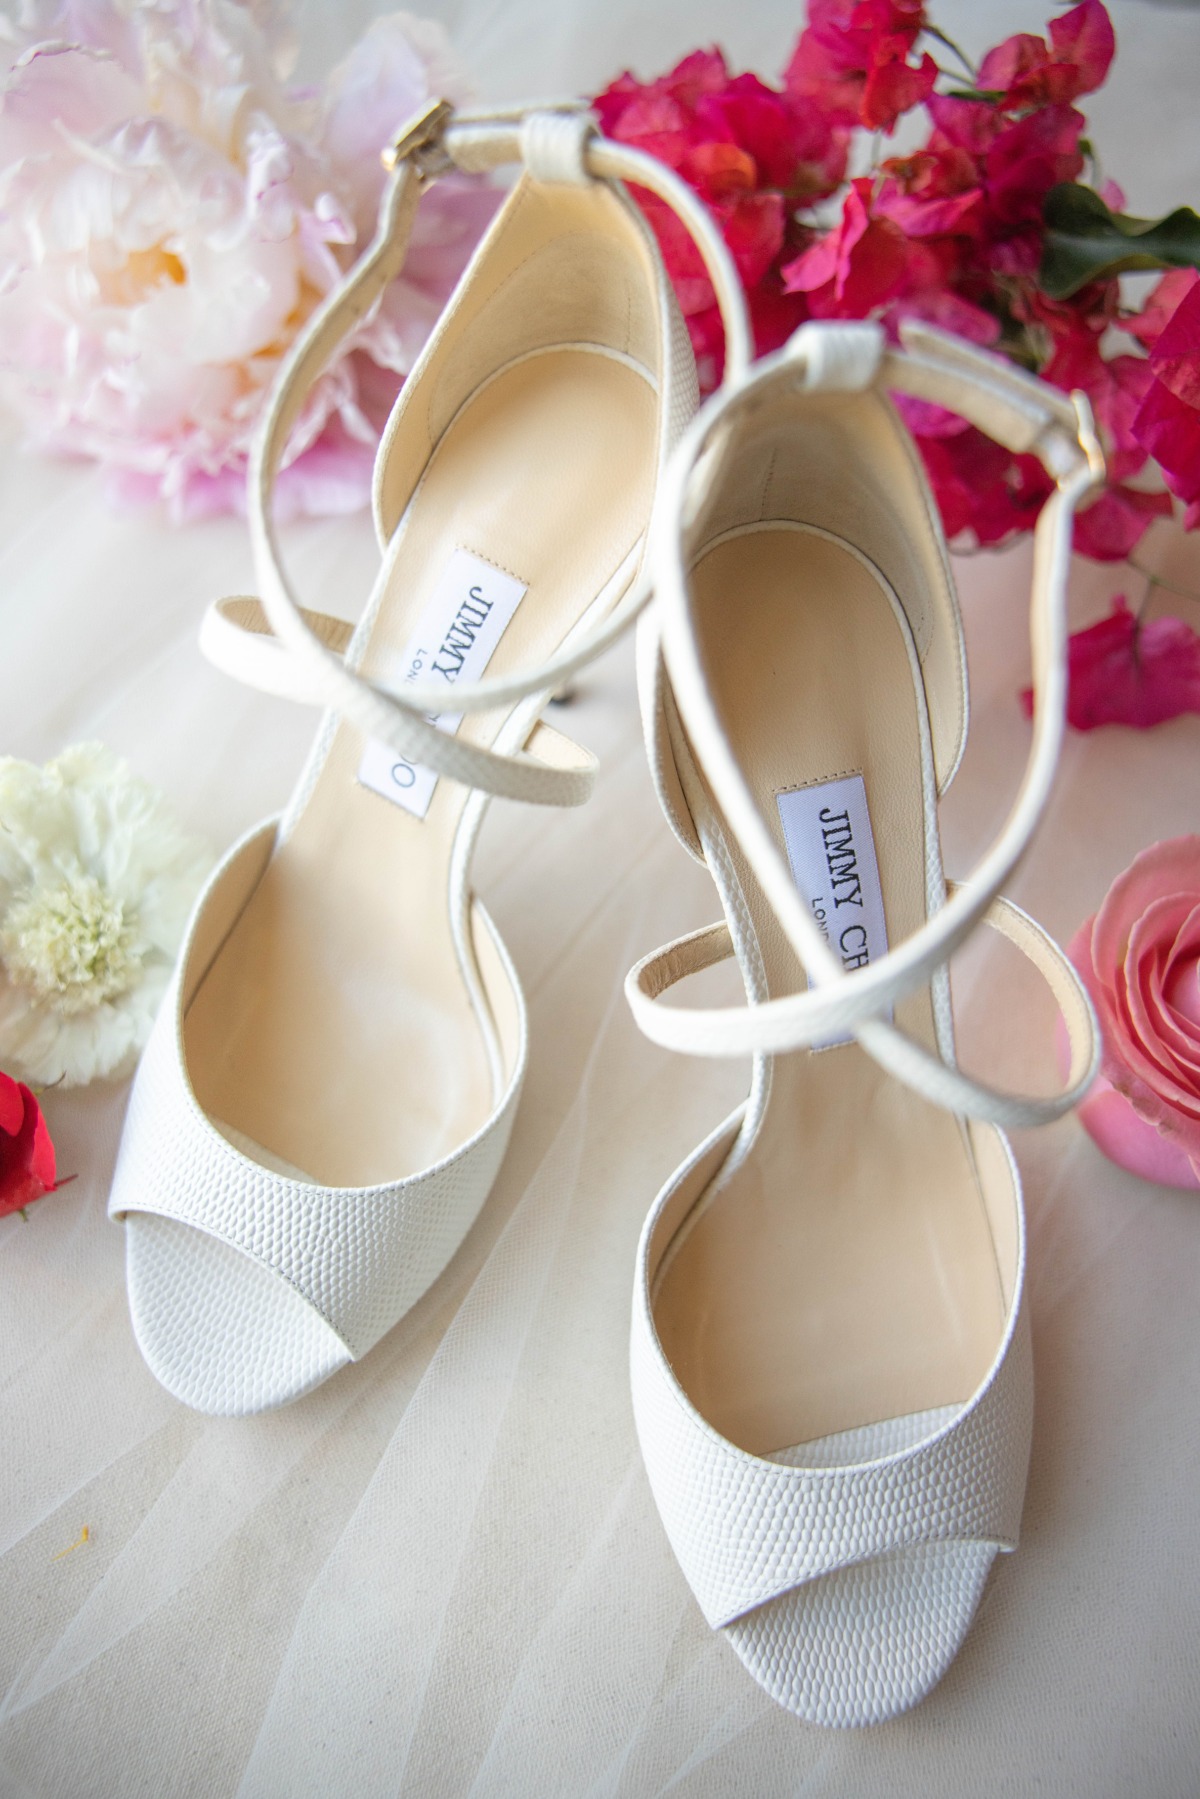 Jimmy Choo wedding high heels